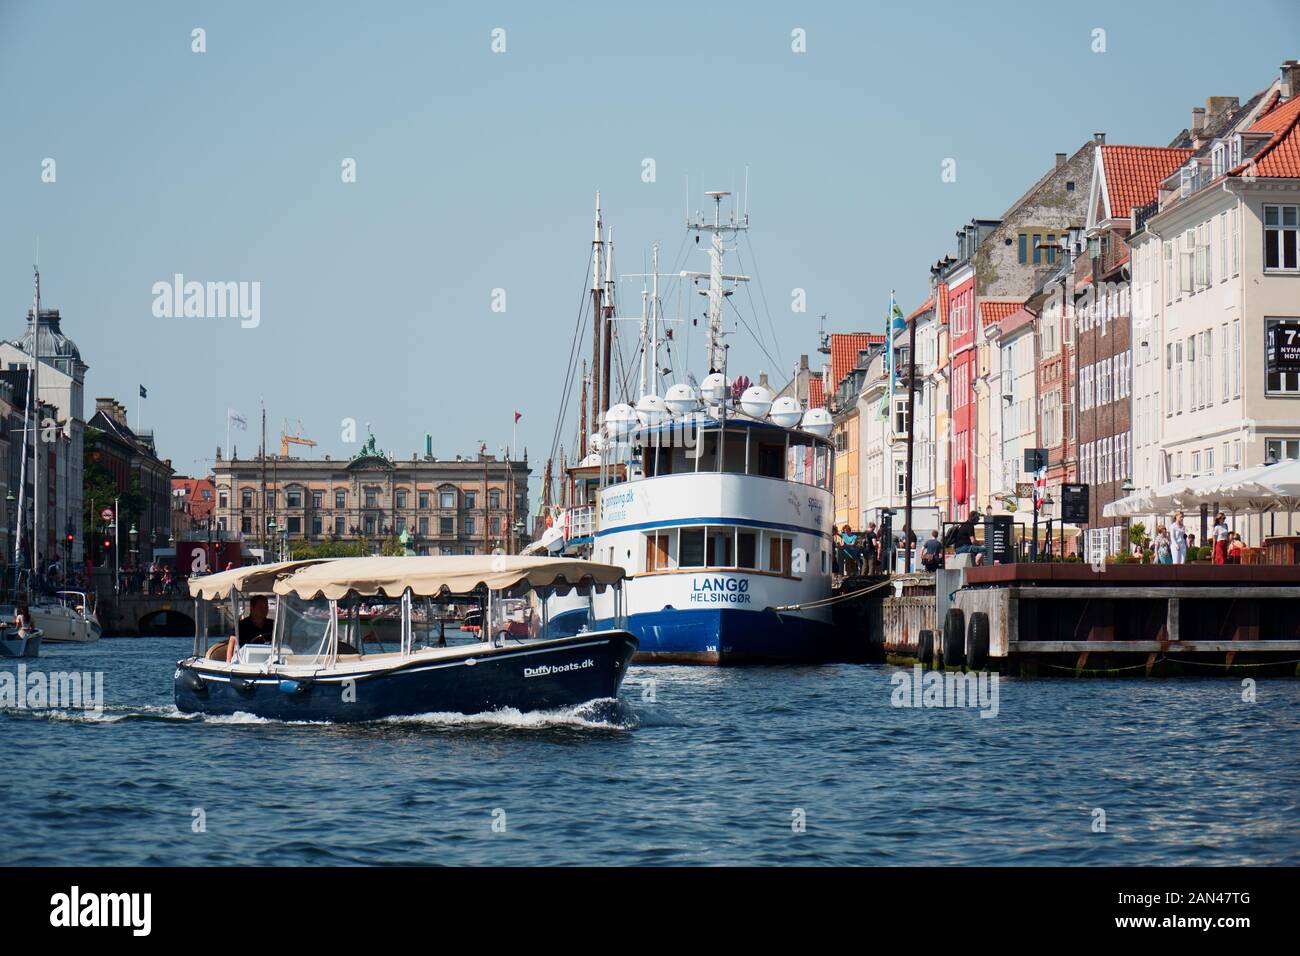 الالتزام يرتجف الاستيعاب duffy boat københavn -